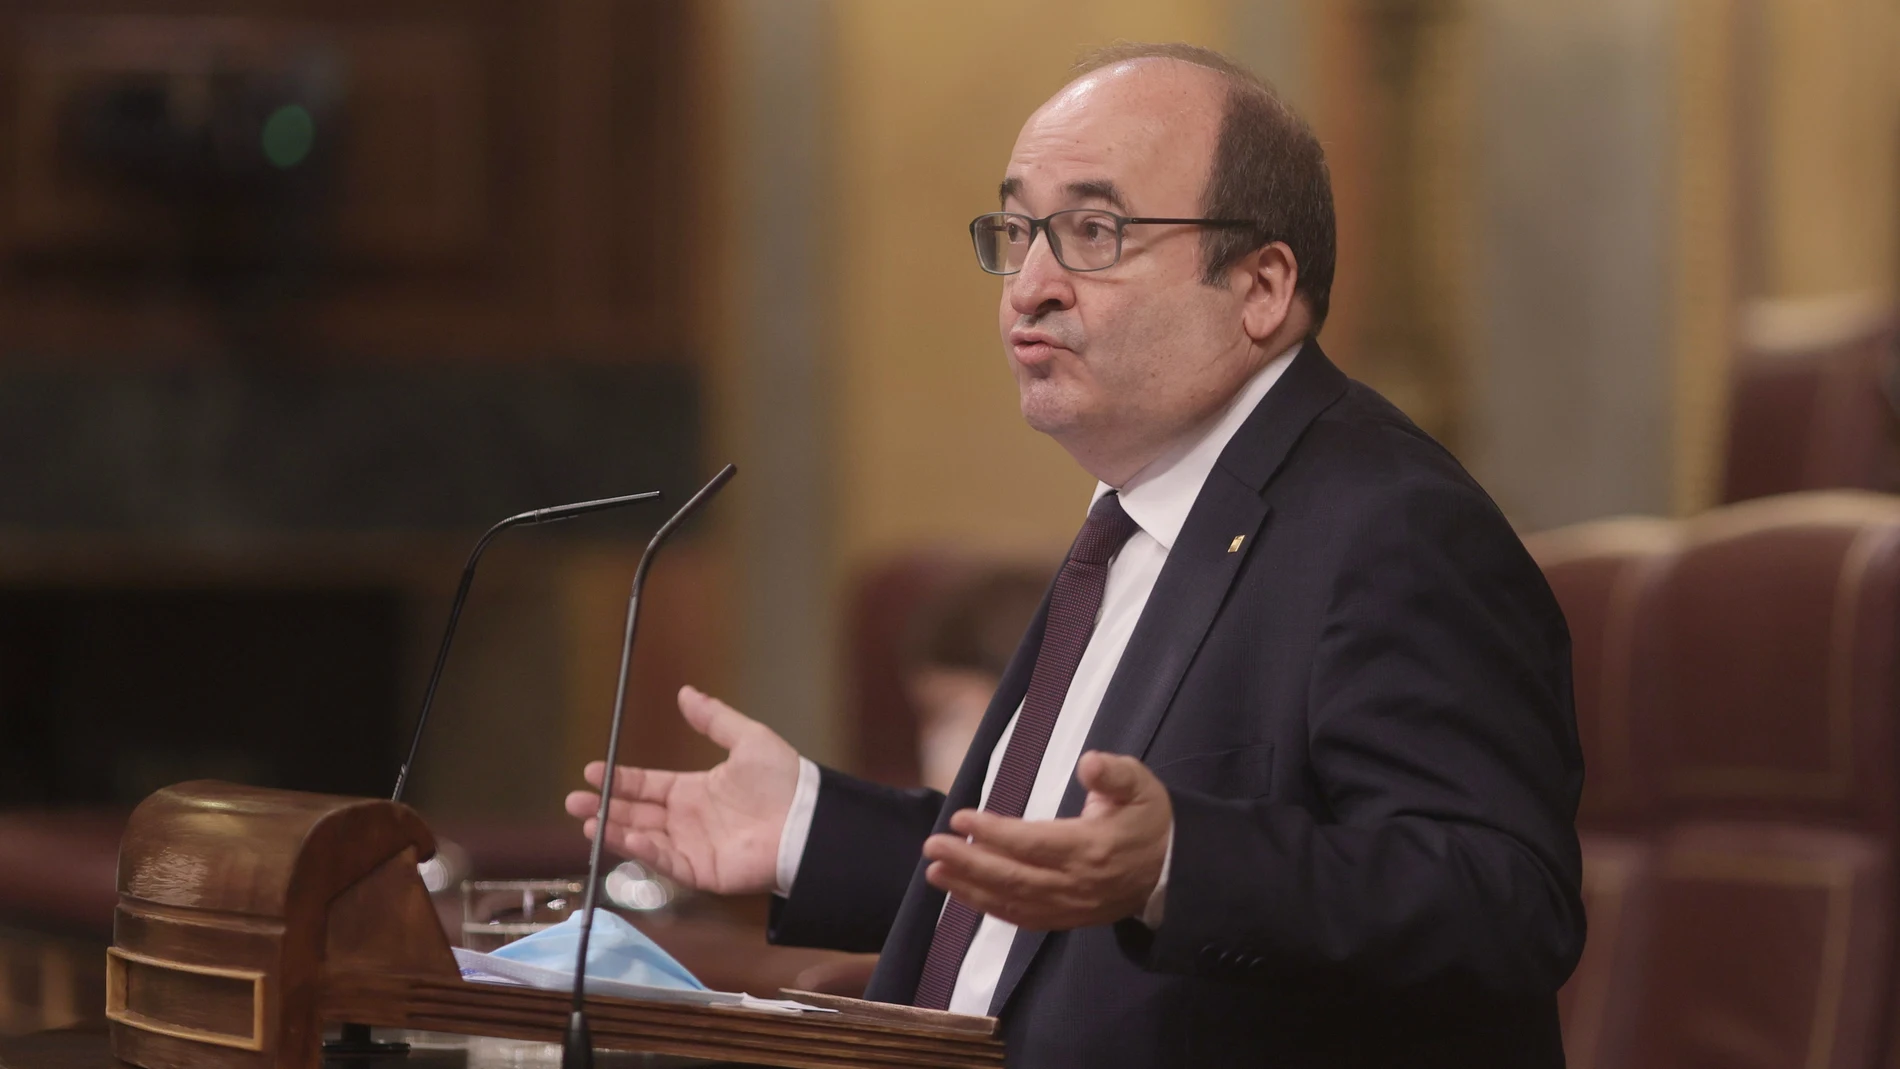 El ministro de Política Territorial y Función Pública, Miquel Iceta, interviene en una sesión de control al Gobierno, a 9 de junio de 2021.EUROPA PRESS/E. Parra. POOL09/06/2021